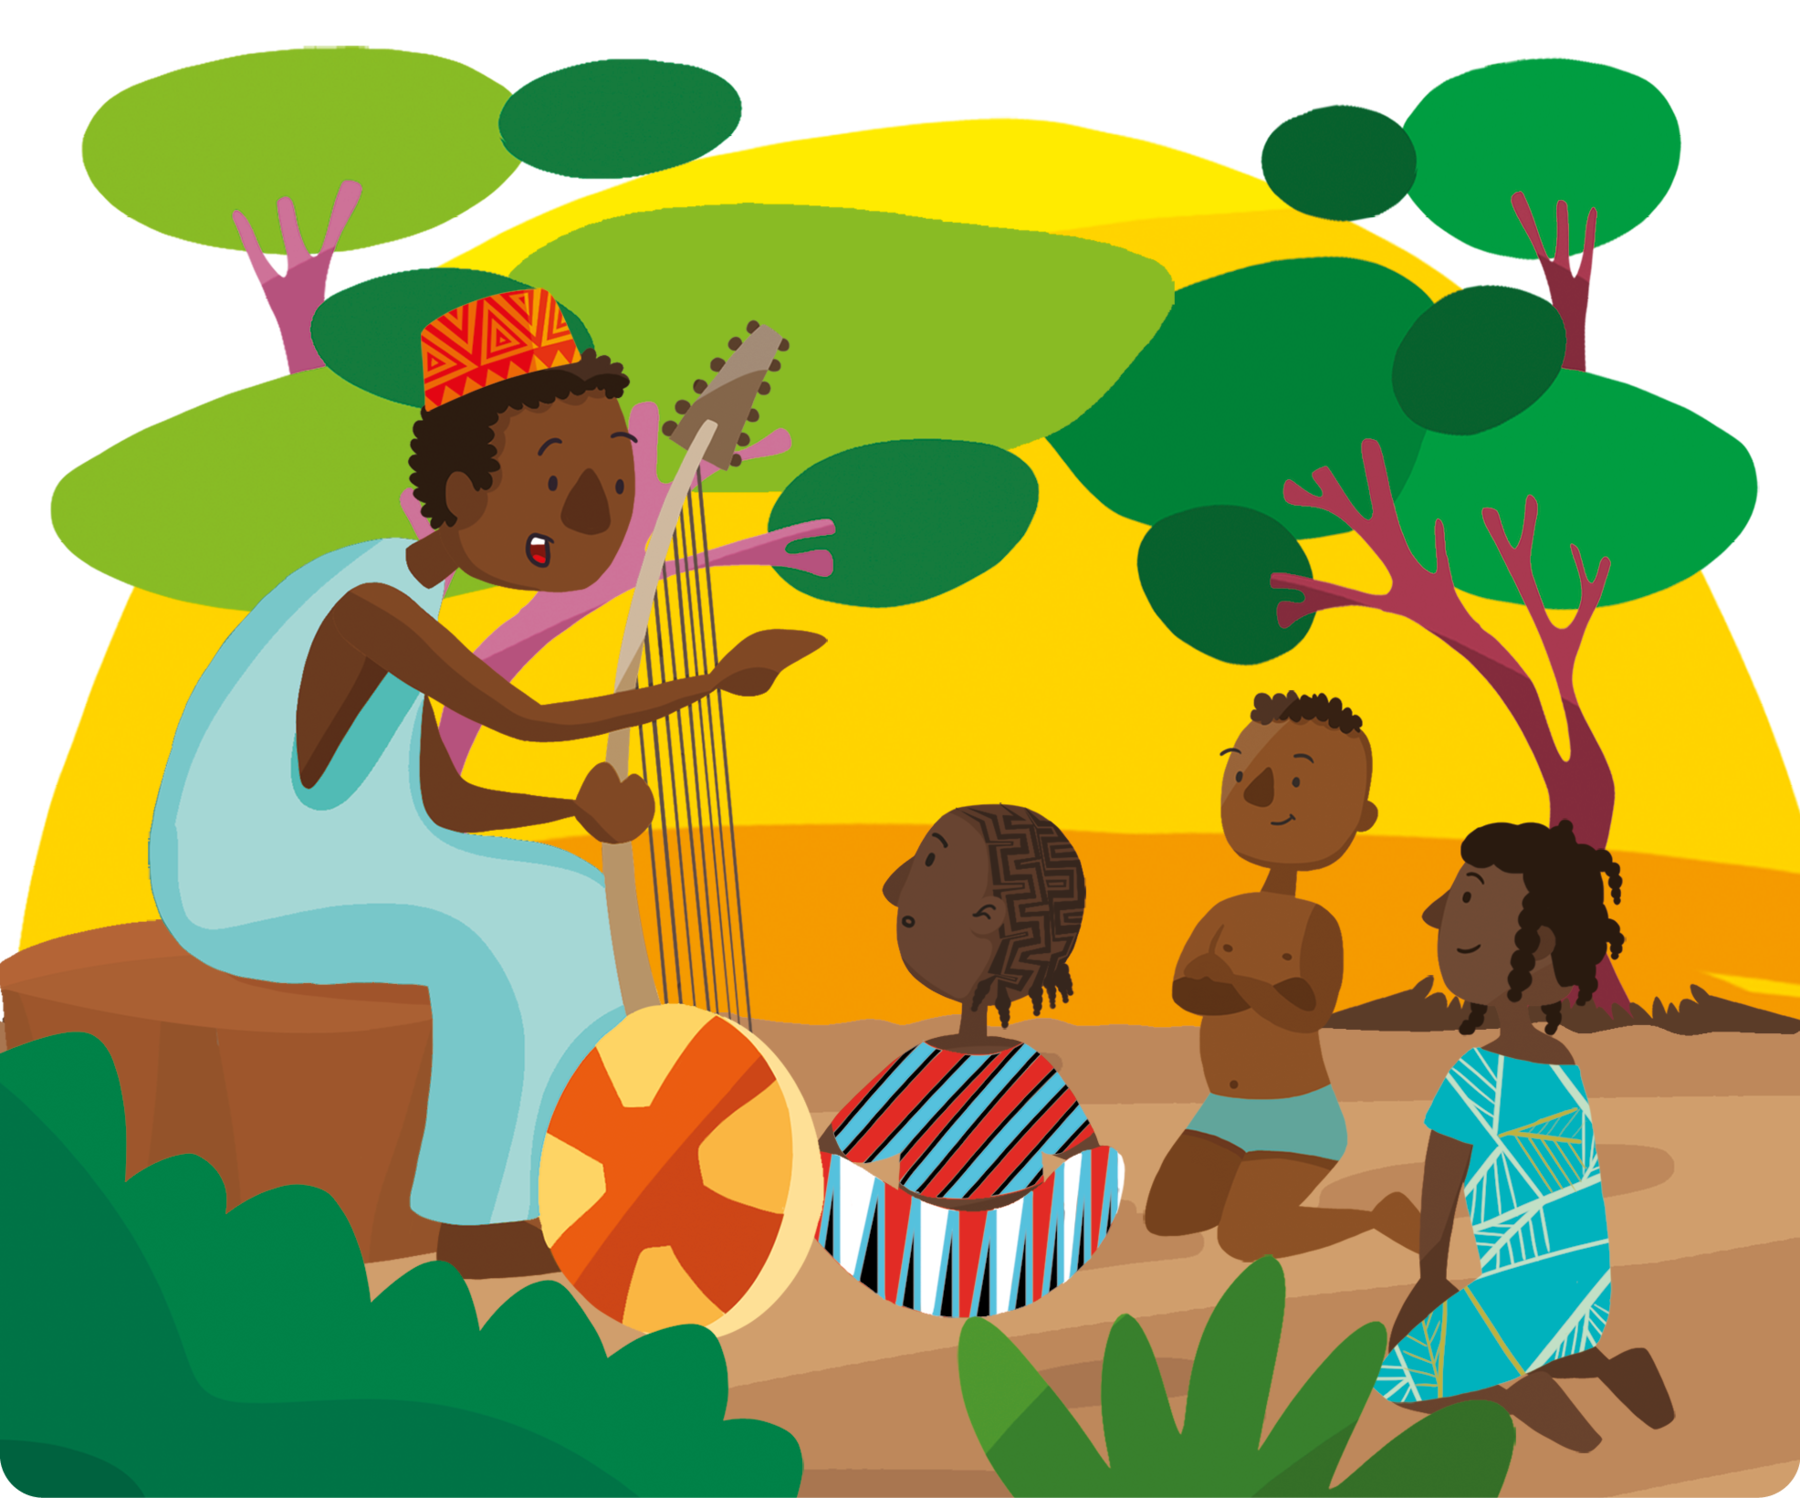 Ilustração. Um homem negro, usando um chapéu redondo na cabeça e uma túnica azul, está sentado em uma pedra, segurando com as mãos um instrumento de corda. Ao lado, três crianças negras ajoelhadas no chão olhando para o homem. Atrás, árvores e o sol.